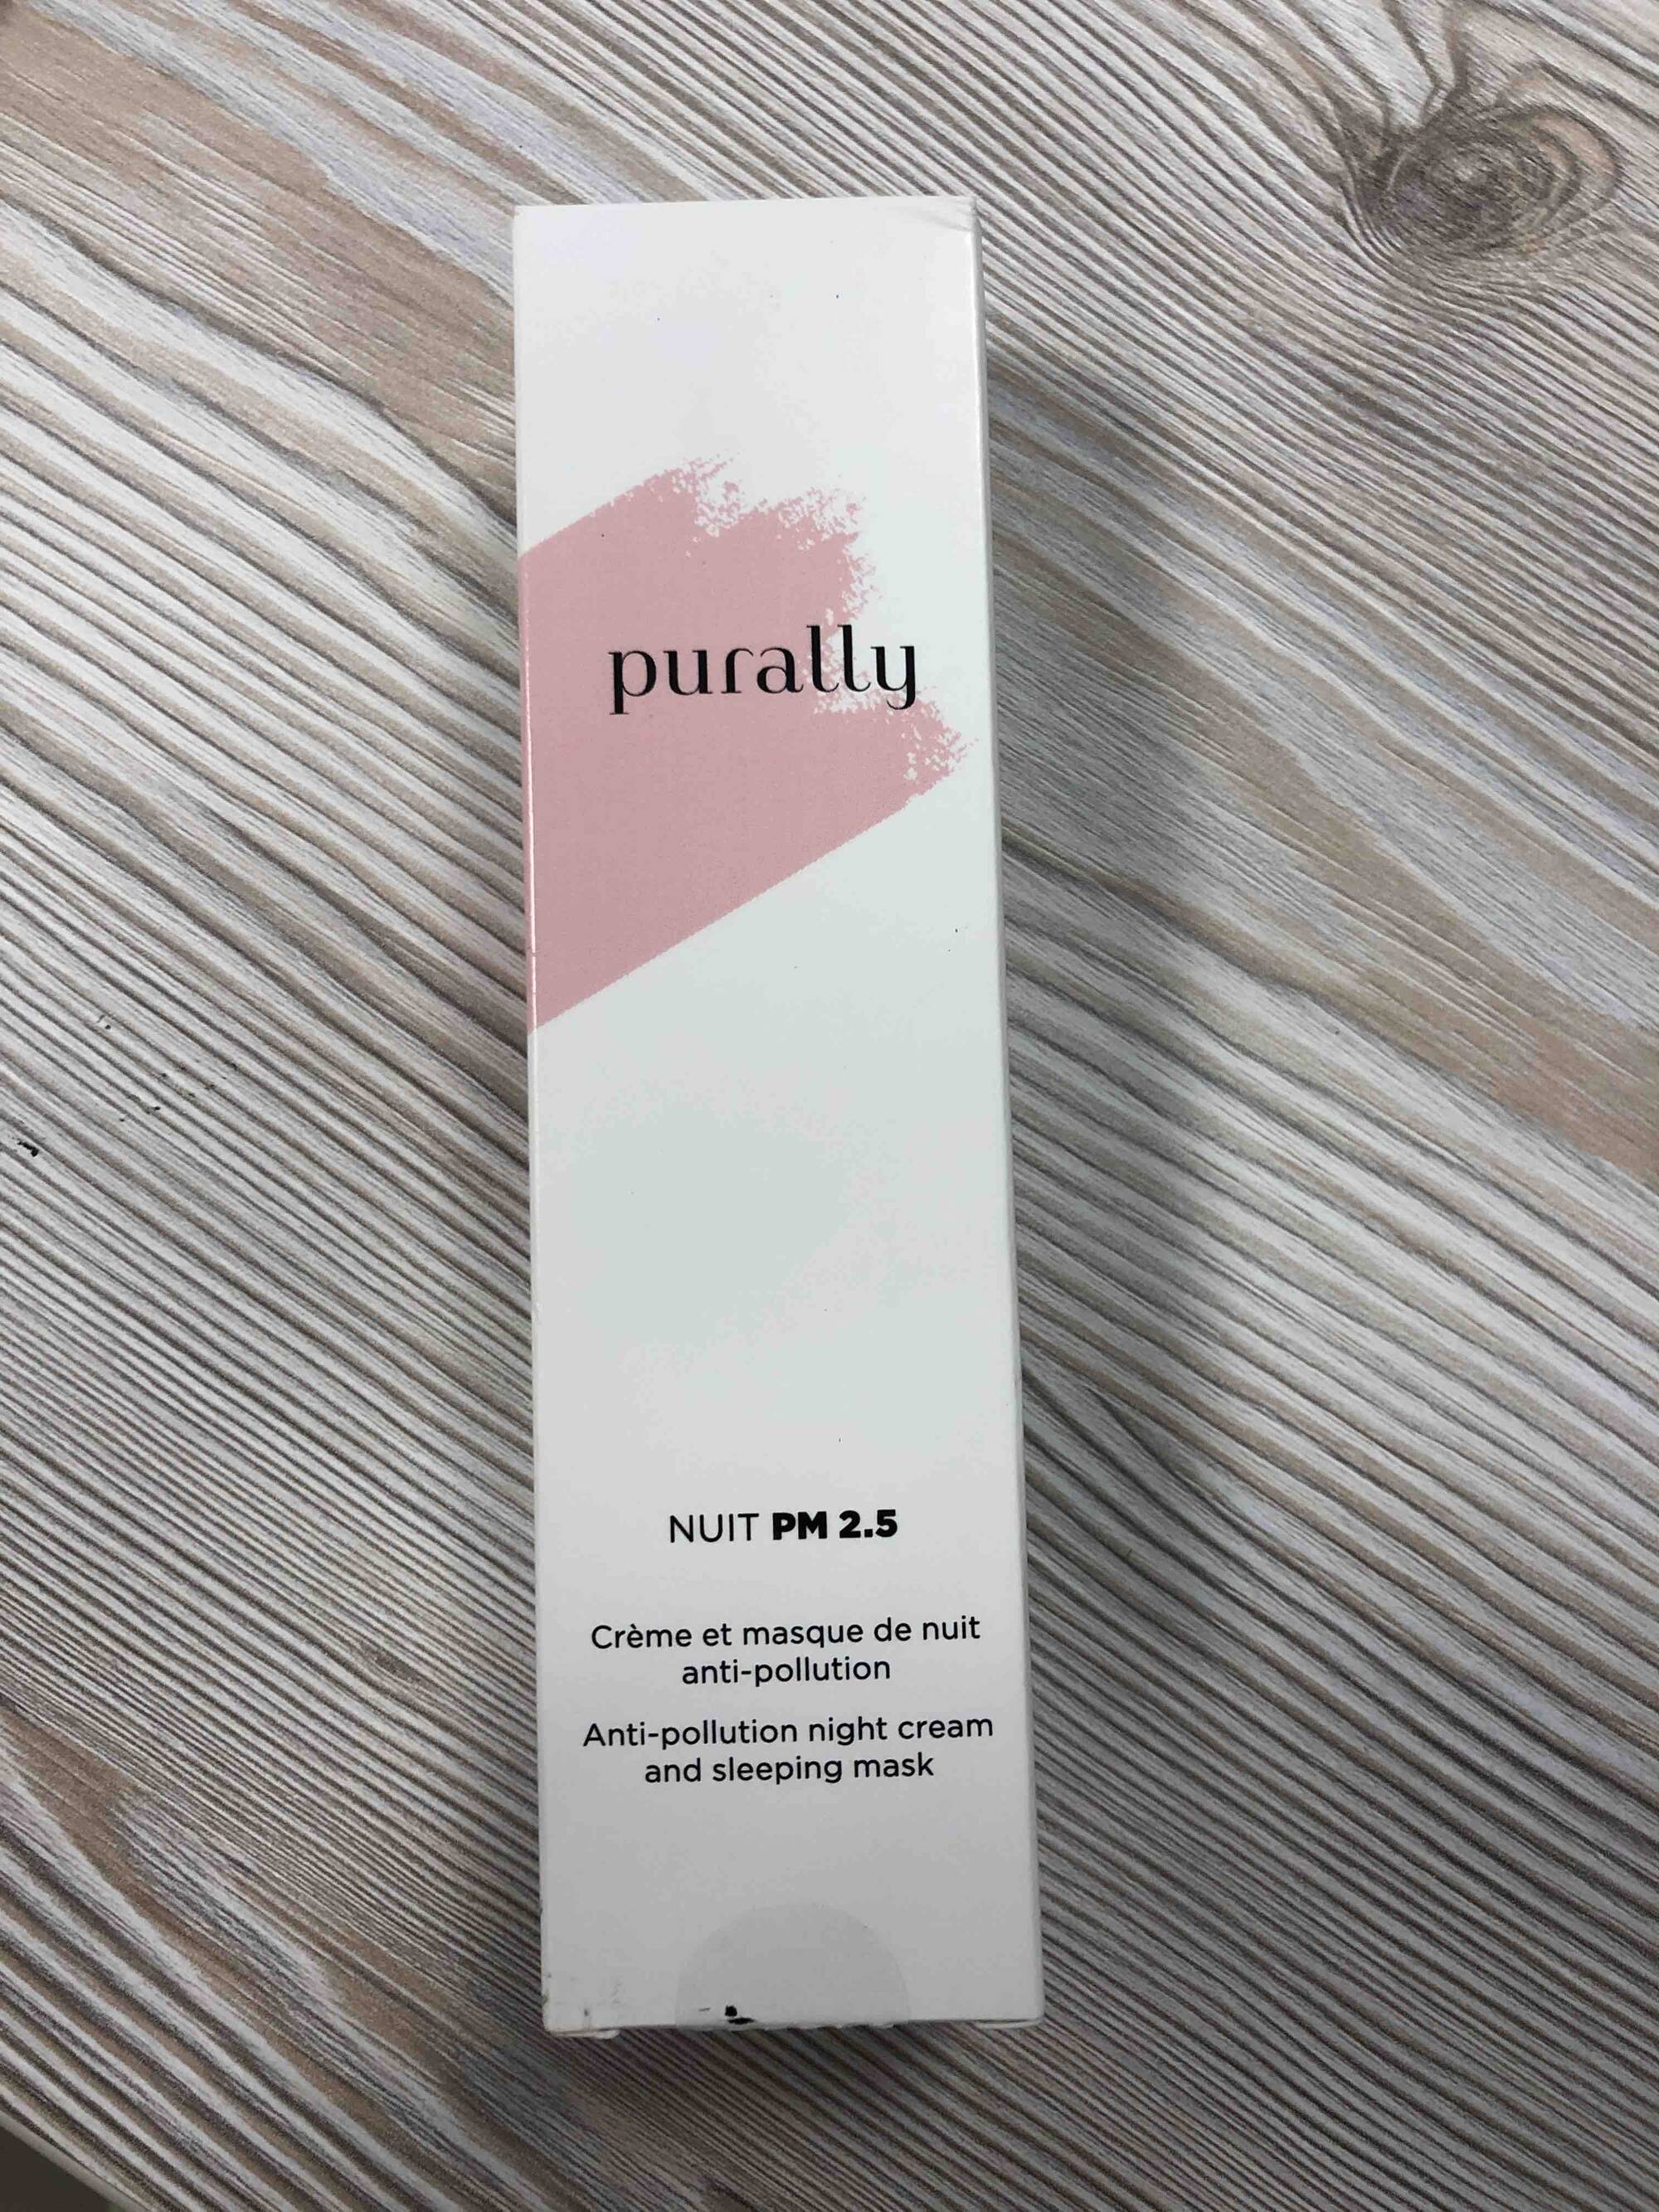 PURALLY - Nuit PM 2.5 - Crème et masque de nuit anti-pollution